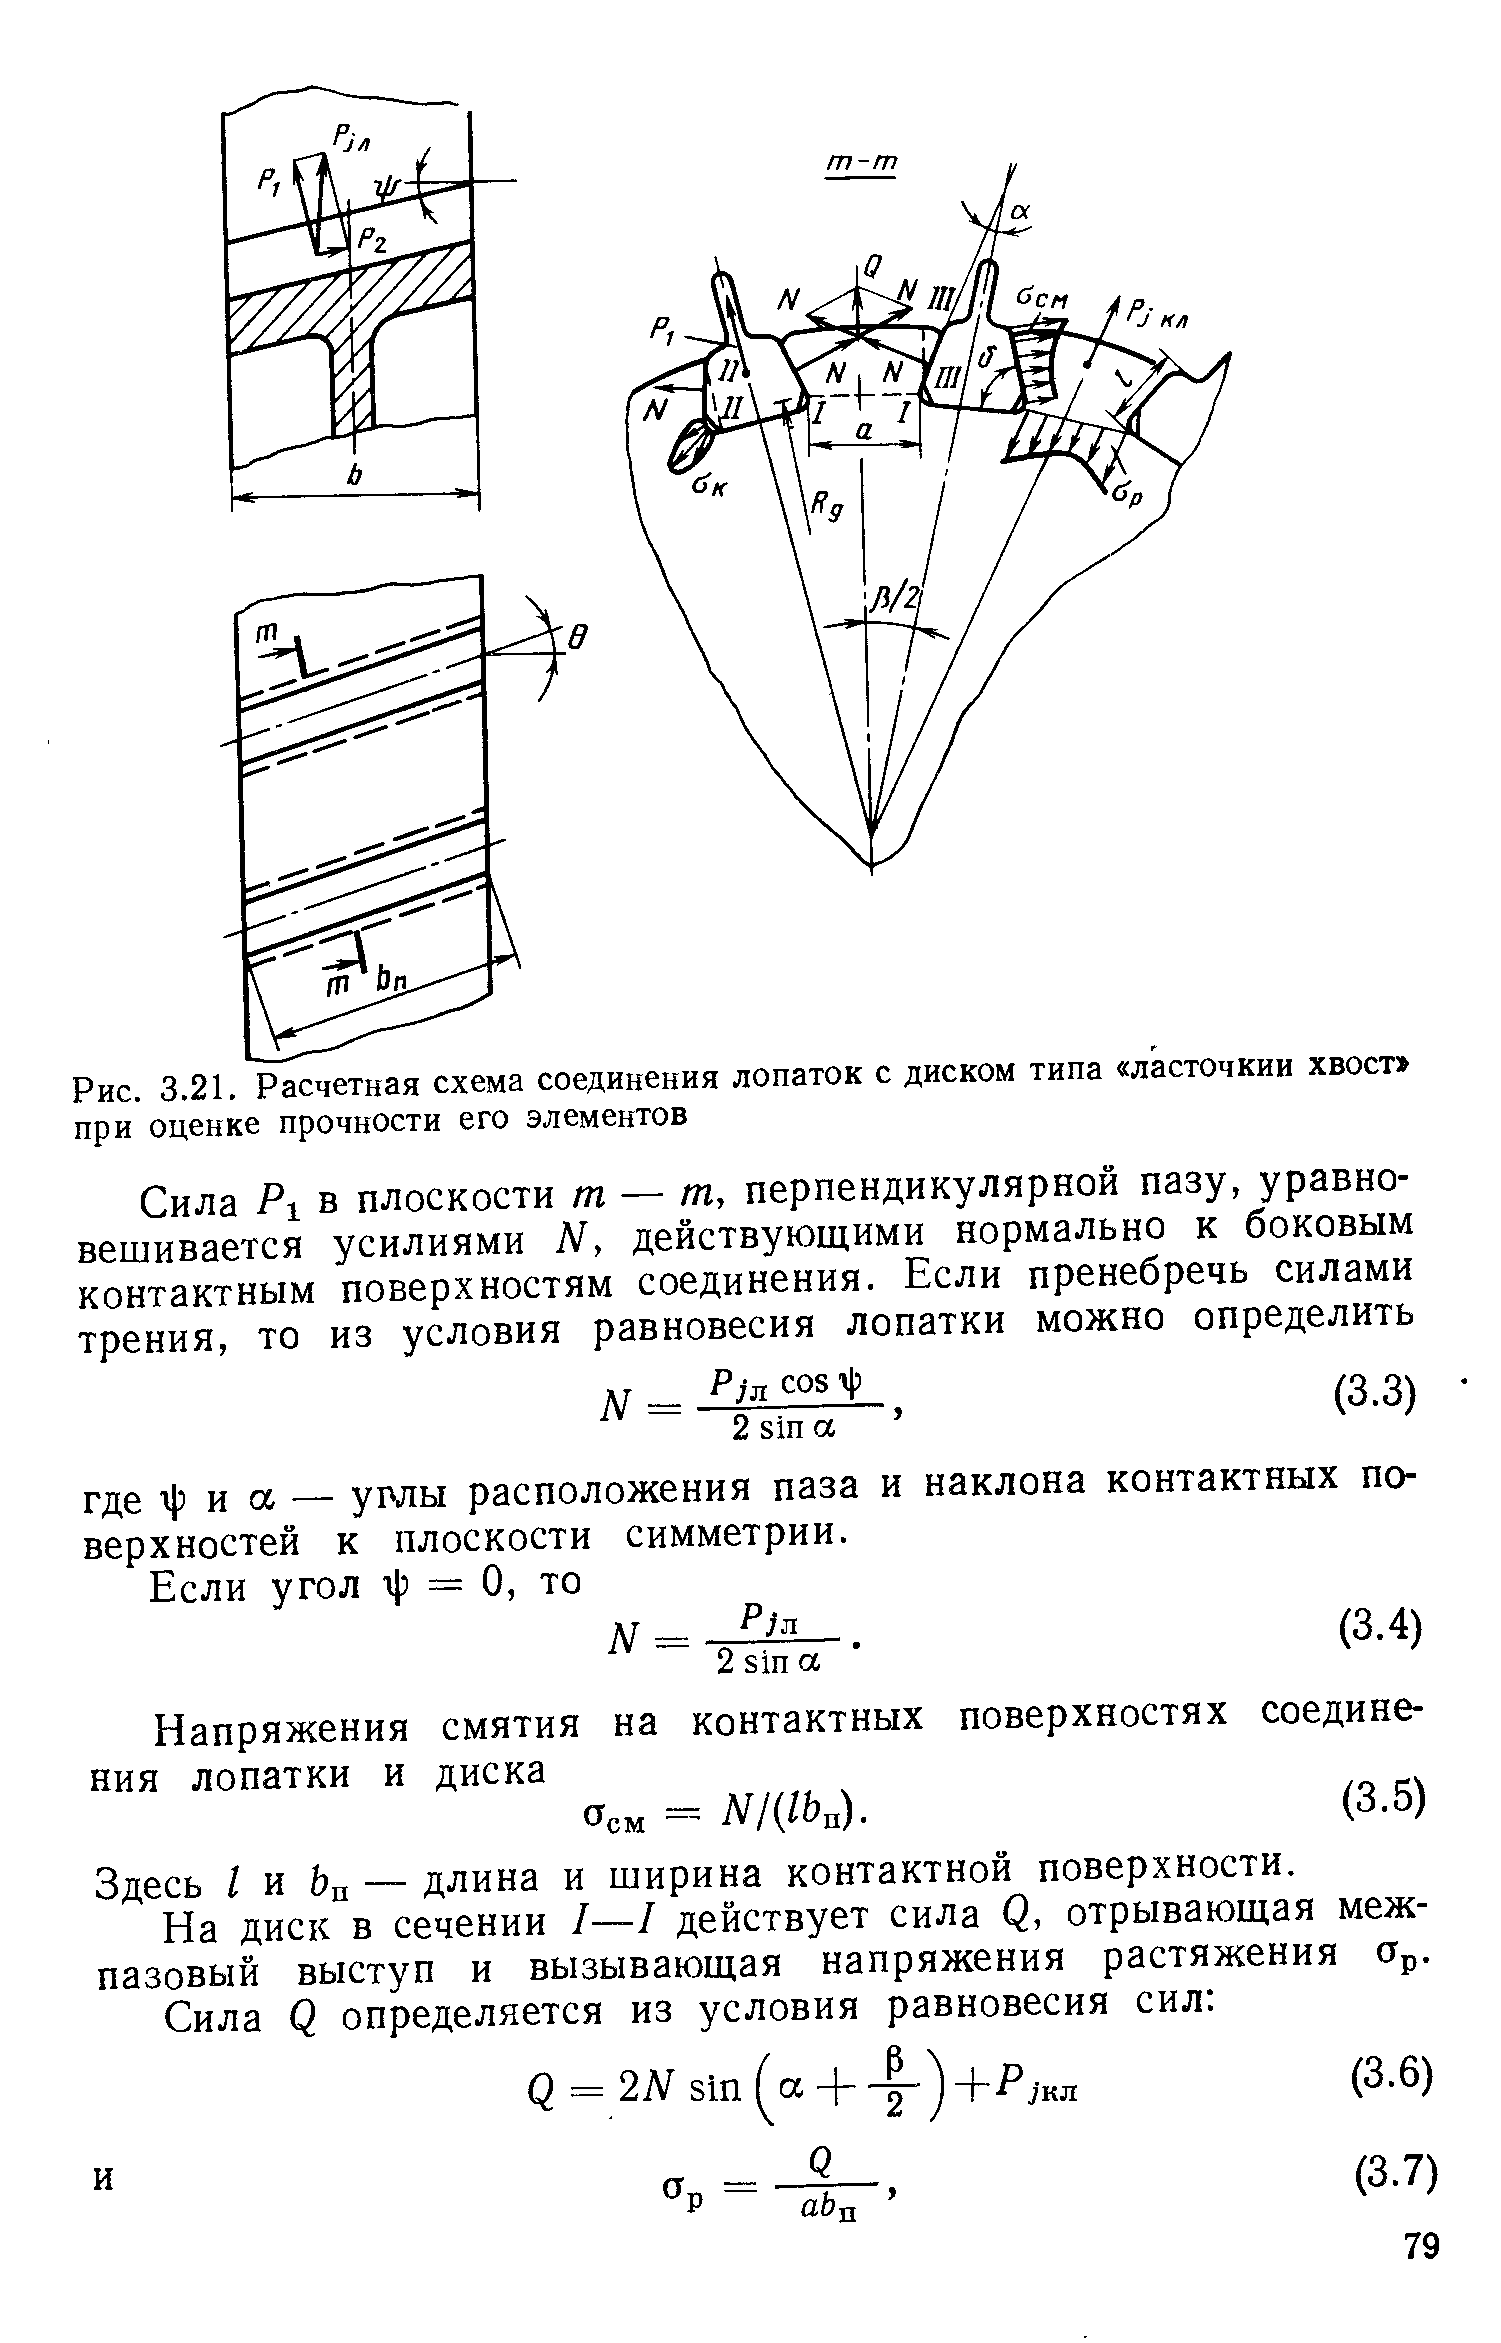 Рис. 3.21. Расчетная схема соединения лопаток с диском типа ласточкин хвост при оценке прочности его элементов
